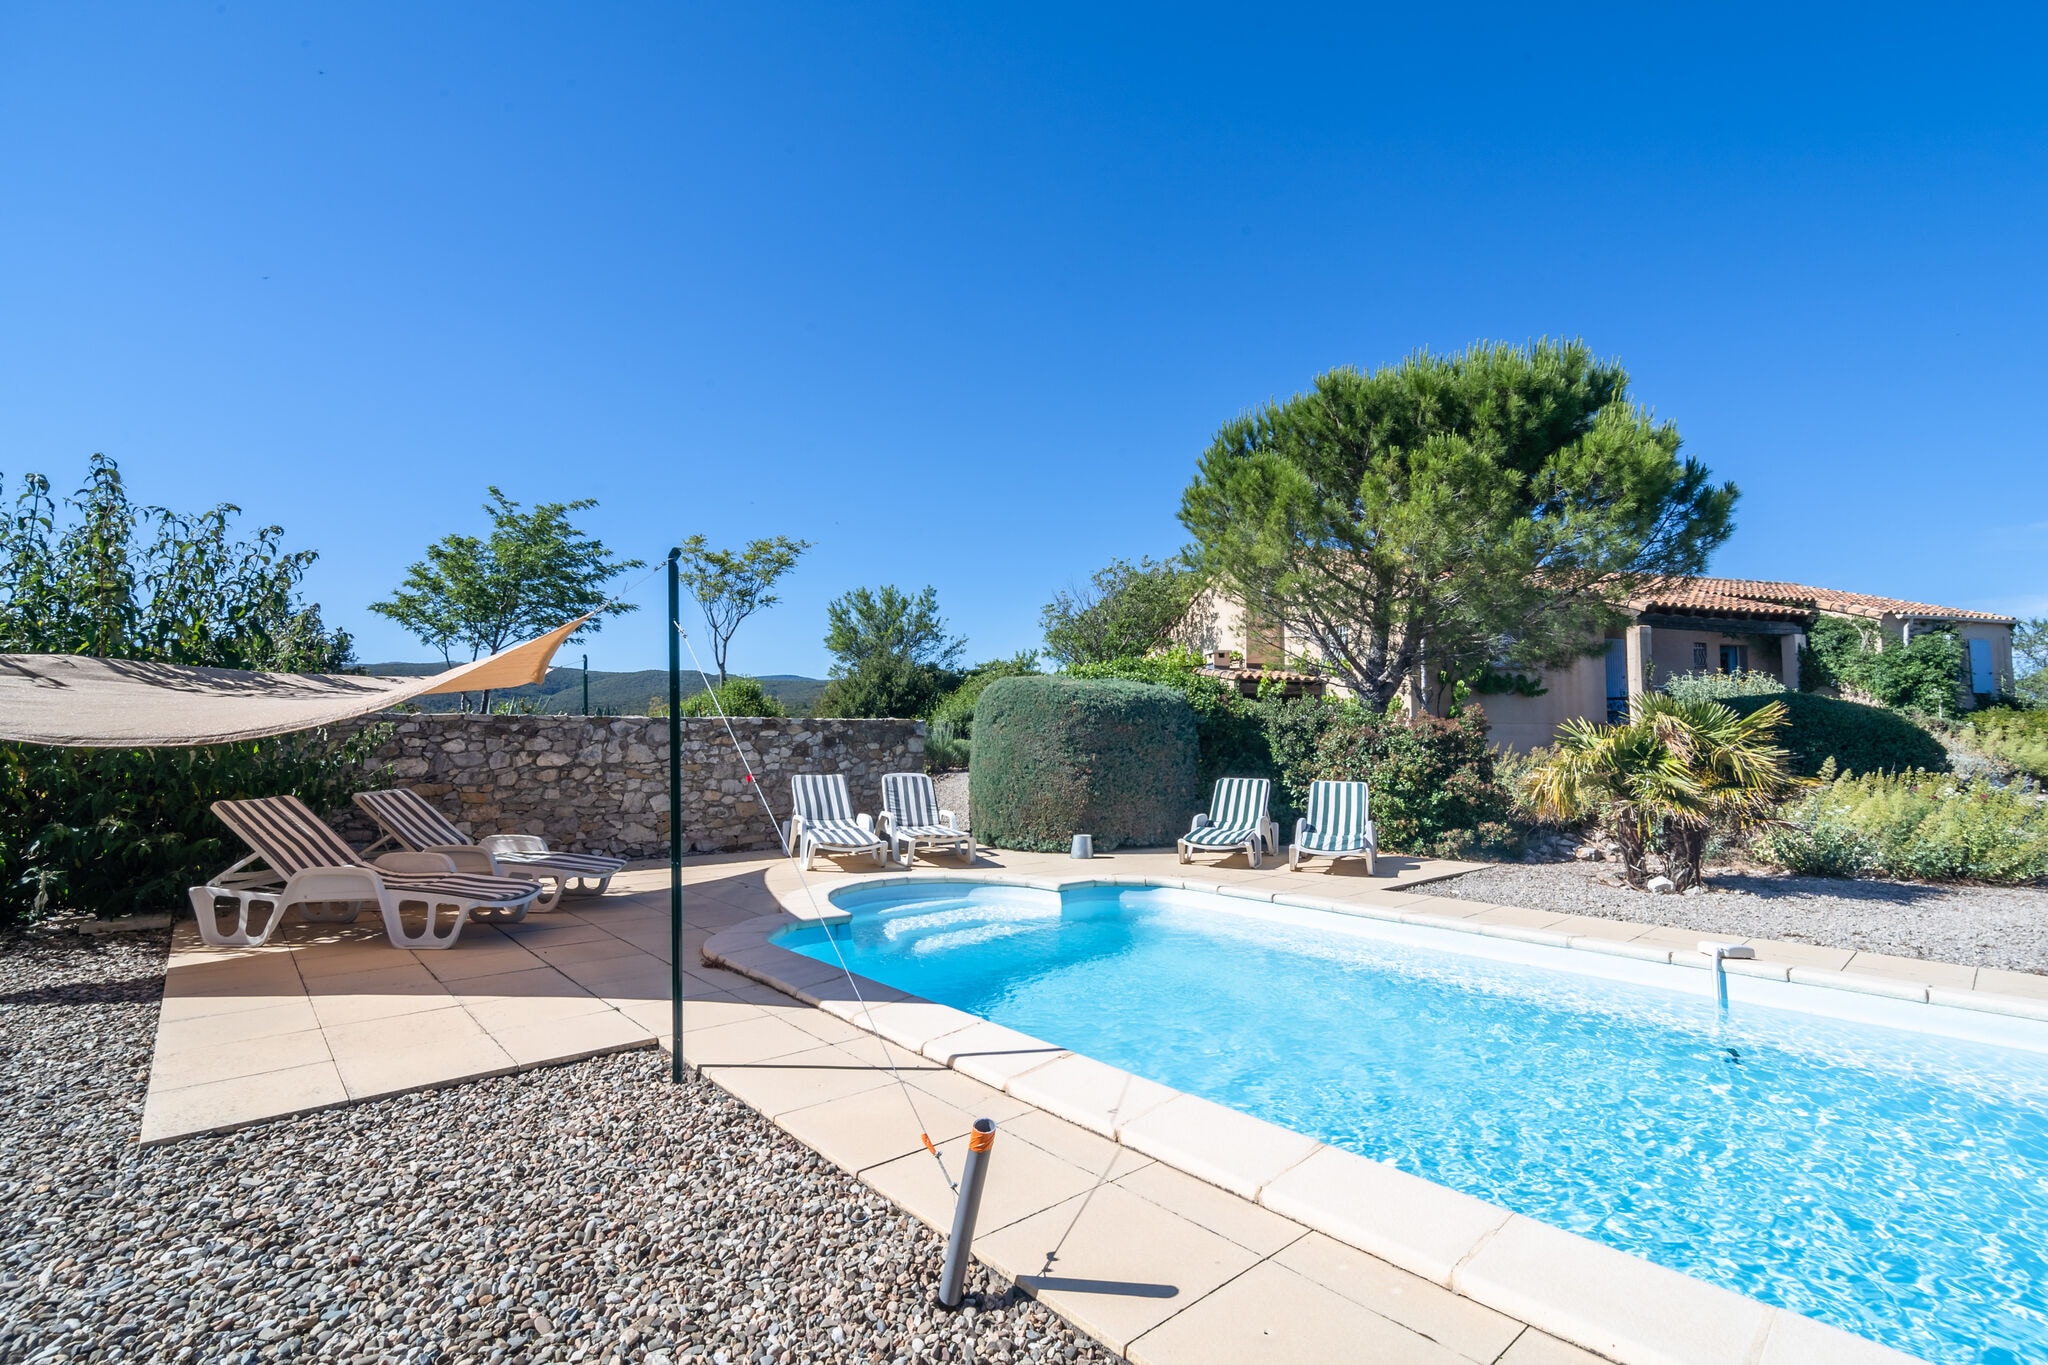 Gelijkvloerse villa met privezwembad en grote tuin aan rand van wijndorp